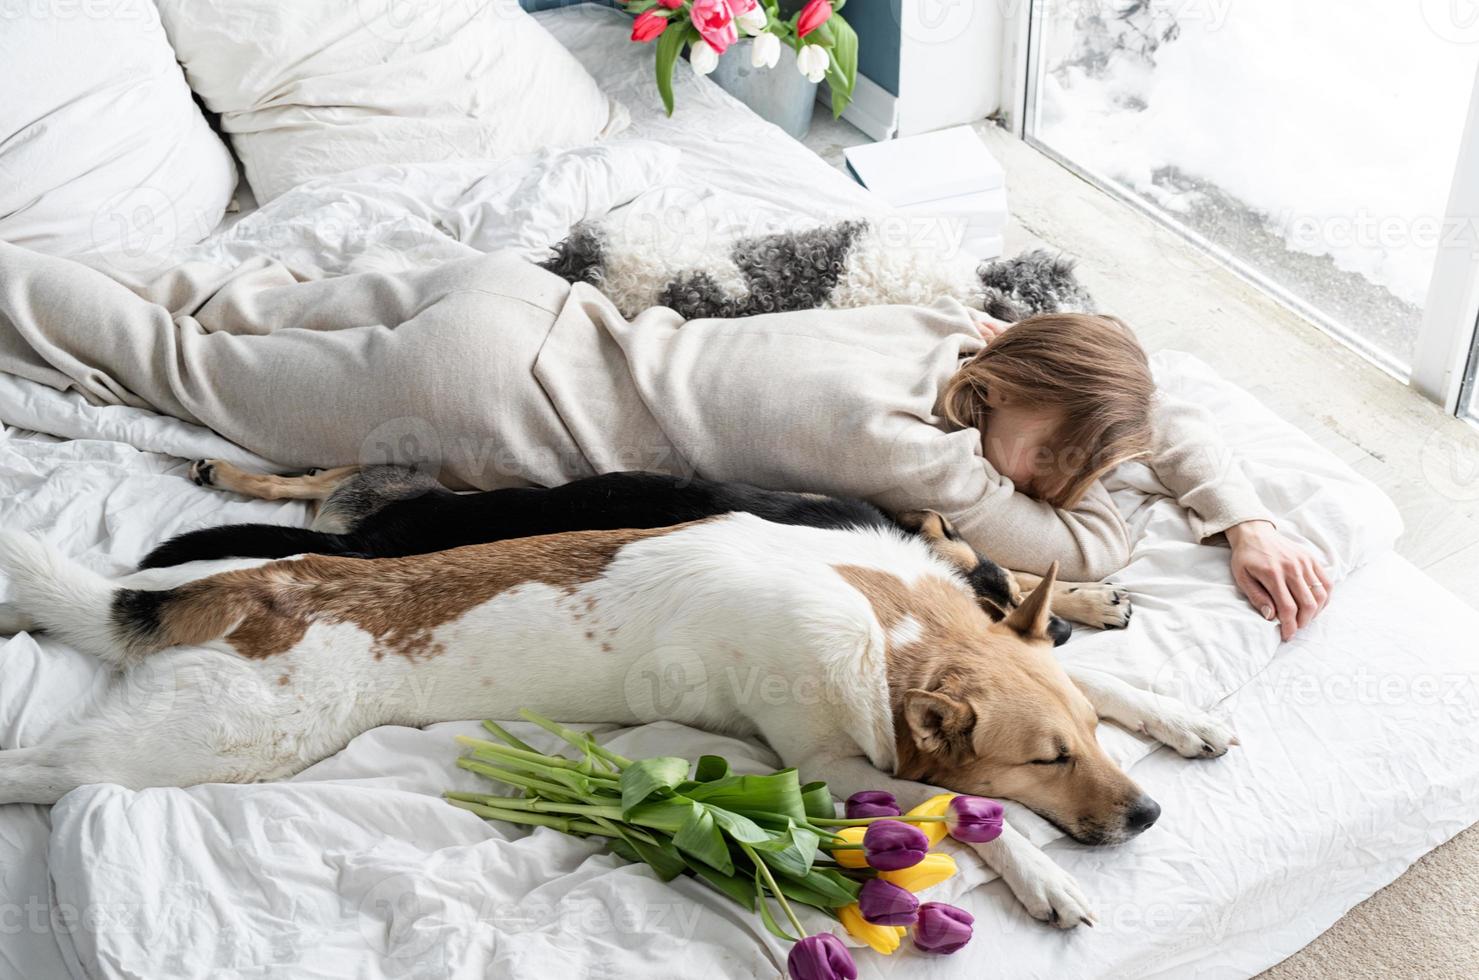 jovem de pijama deitada na cama com seus cachorros foto